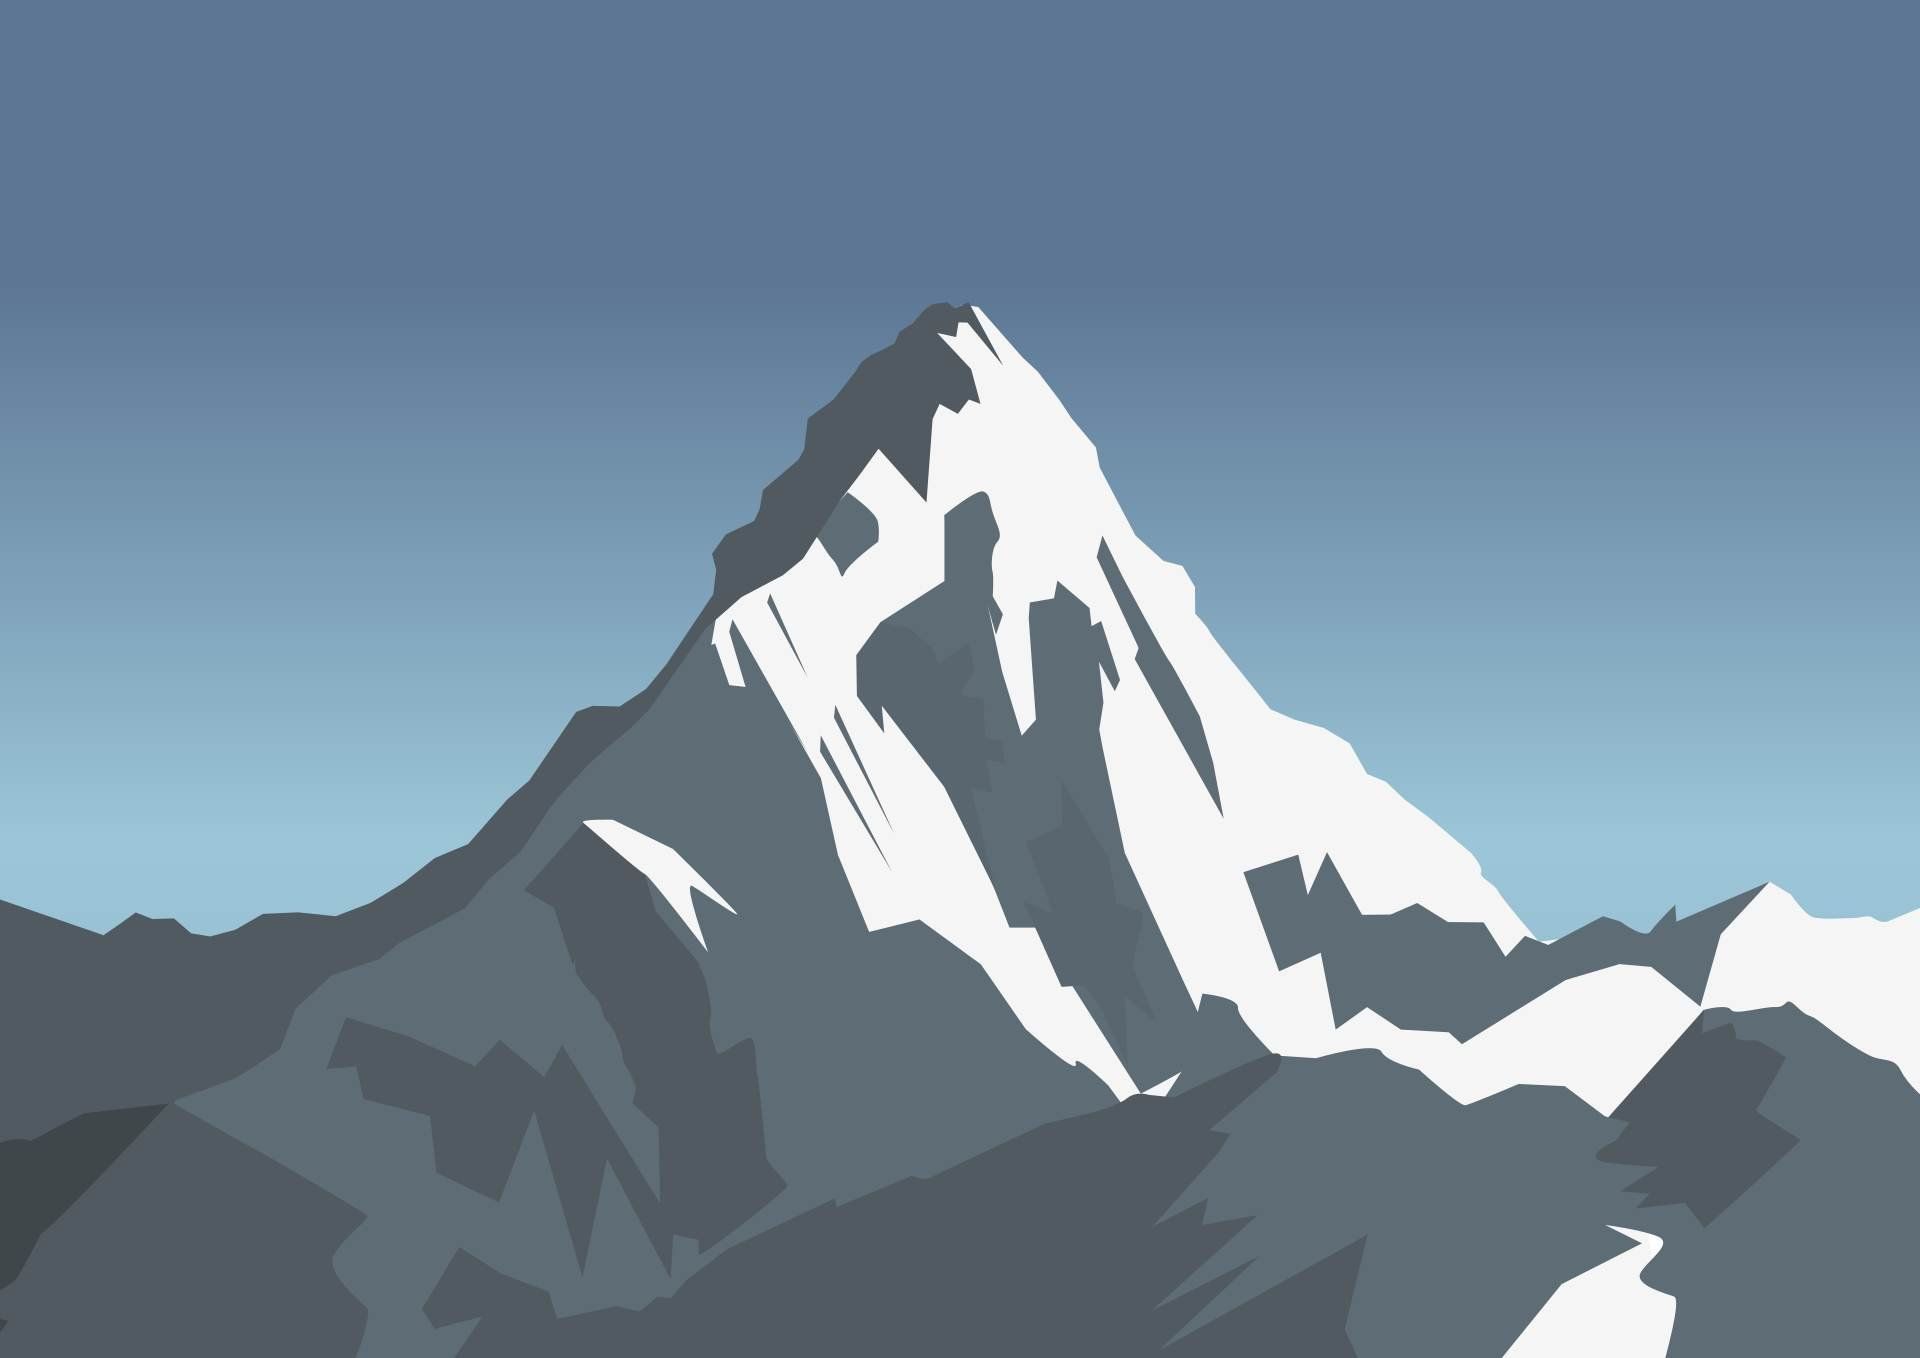 Illustration of Mount Everest